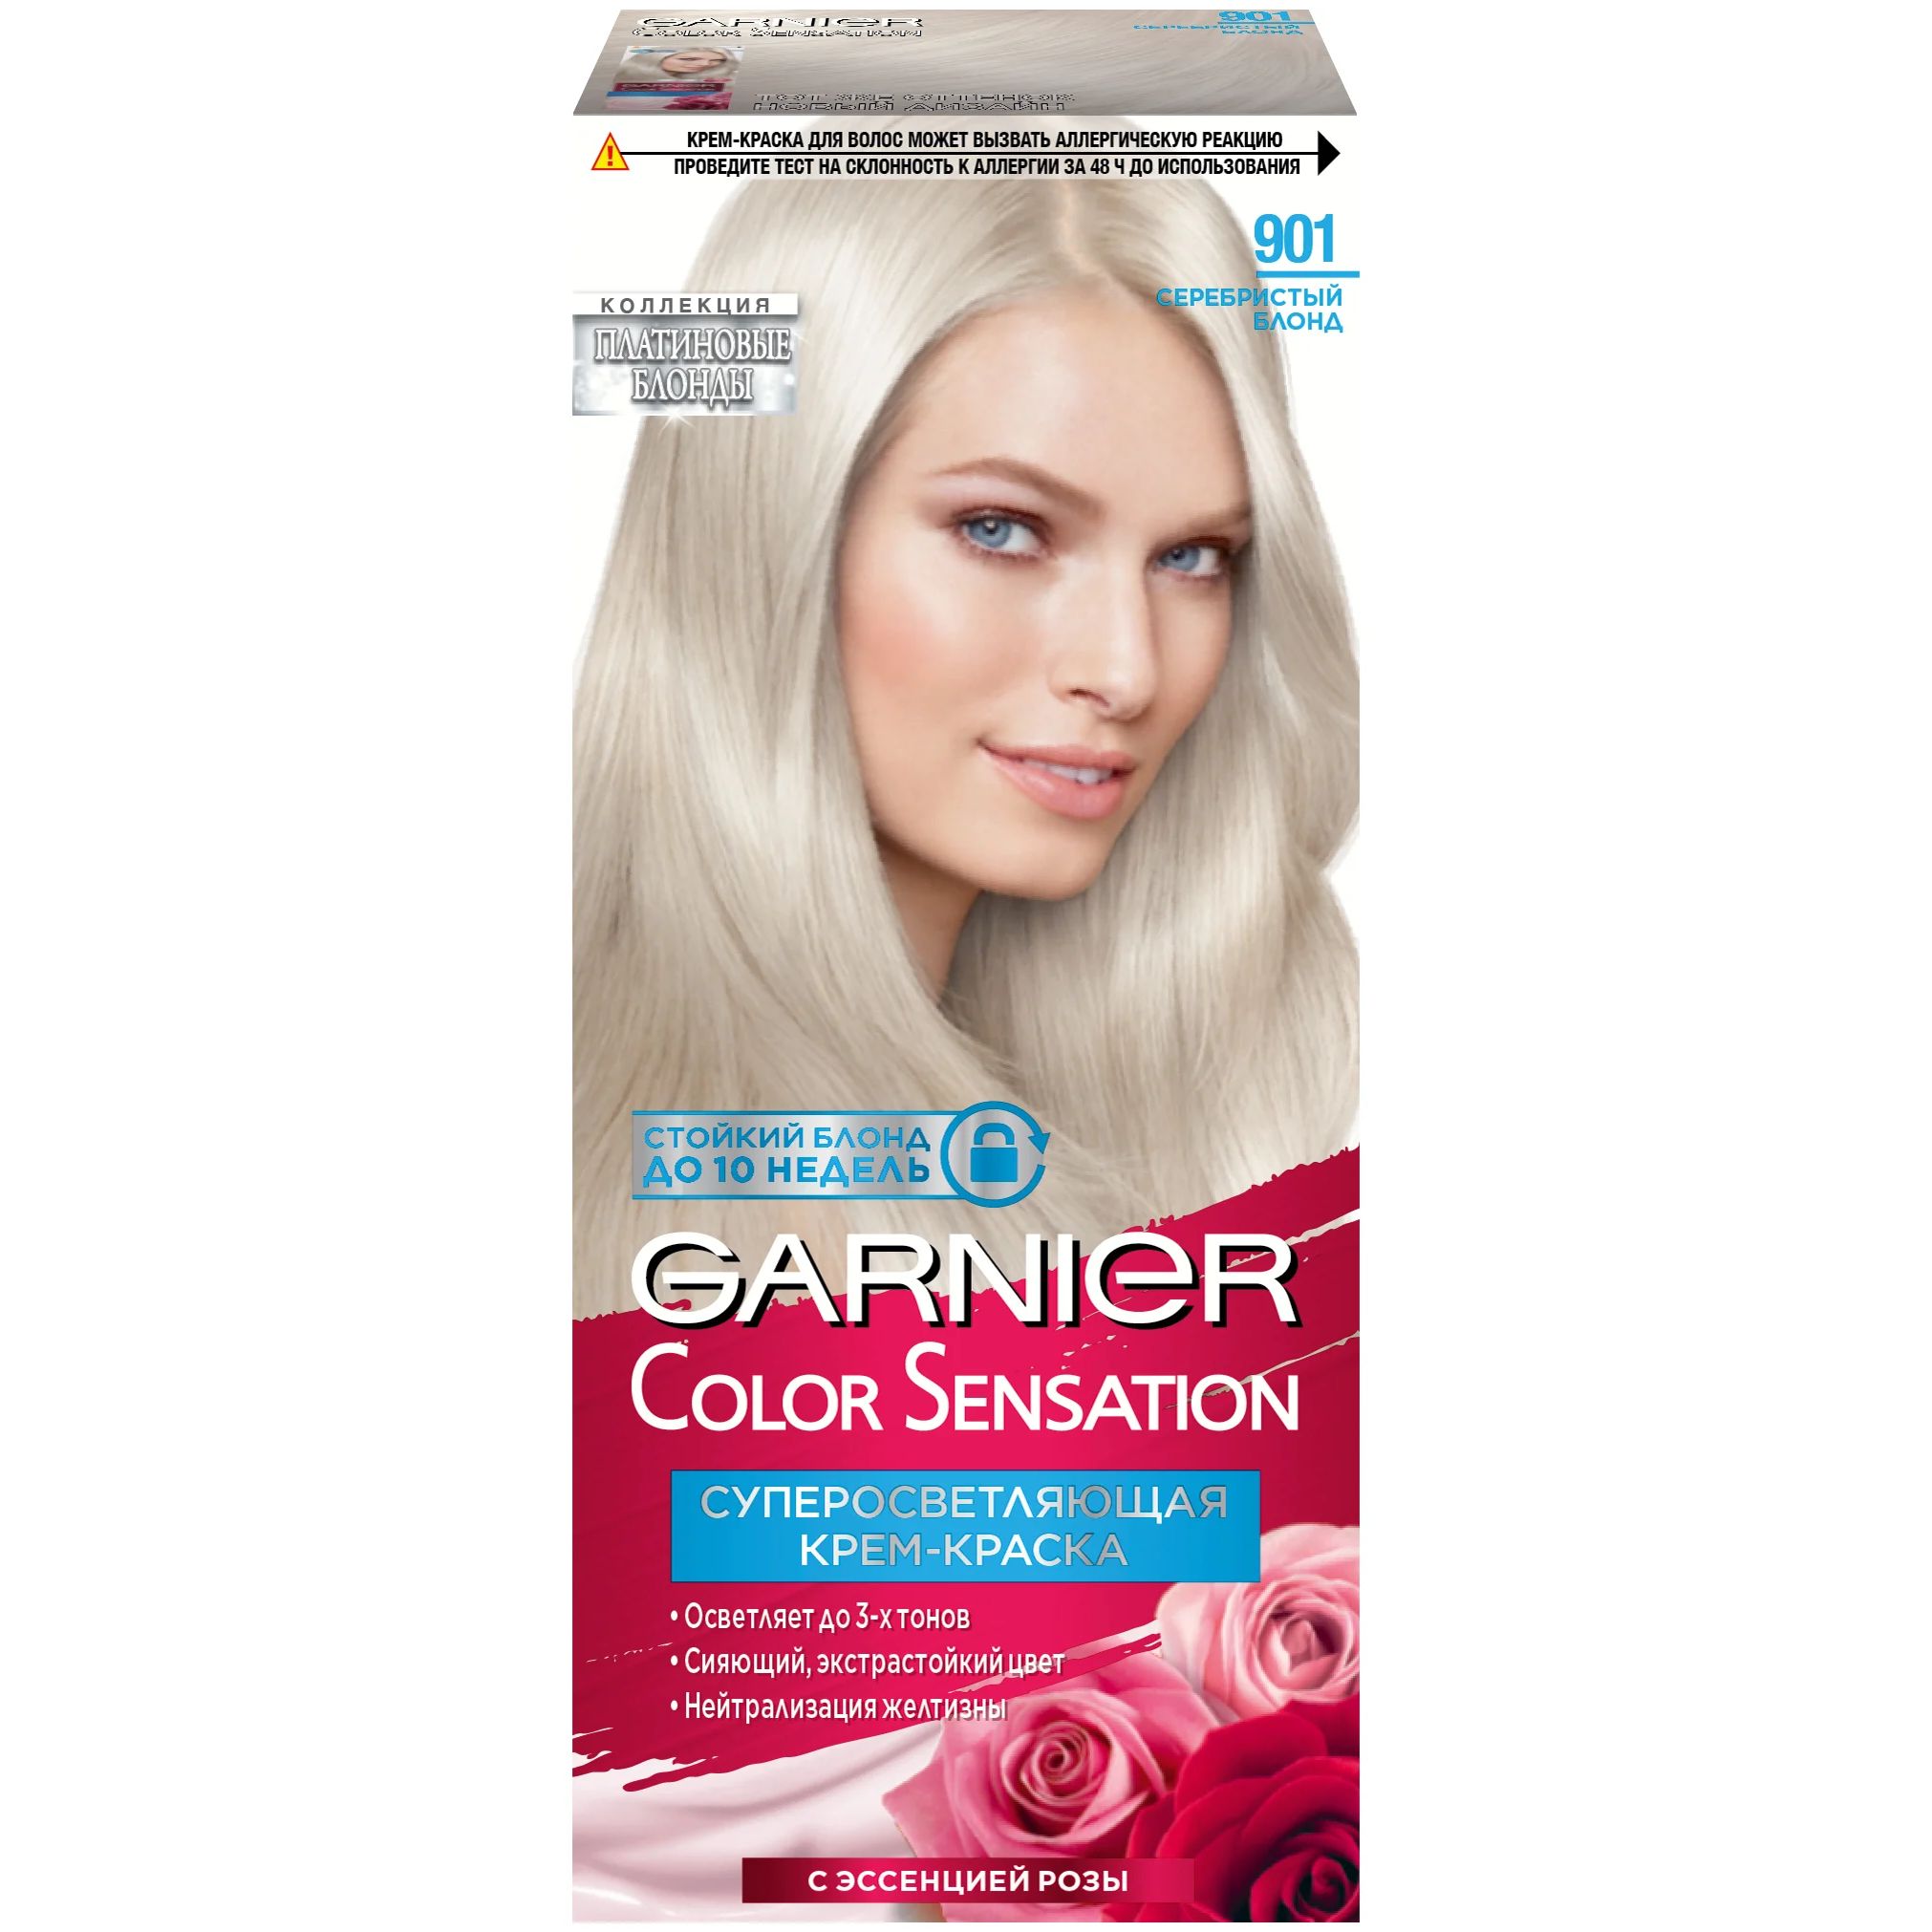 Крем-краска для волос Garnier Color Sensation 901 Серебристый Блонд колпаки колесные 15 гелакси т серебристый карбон компл 2 шт